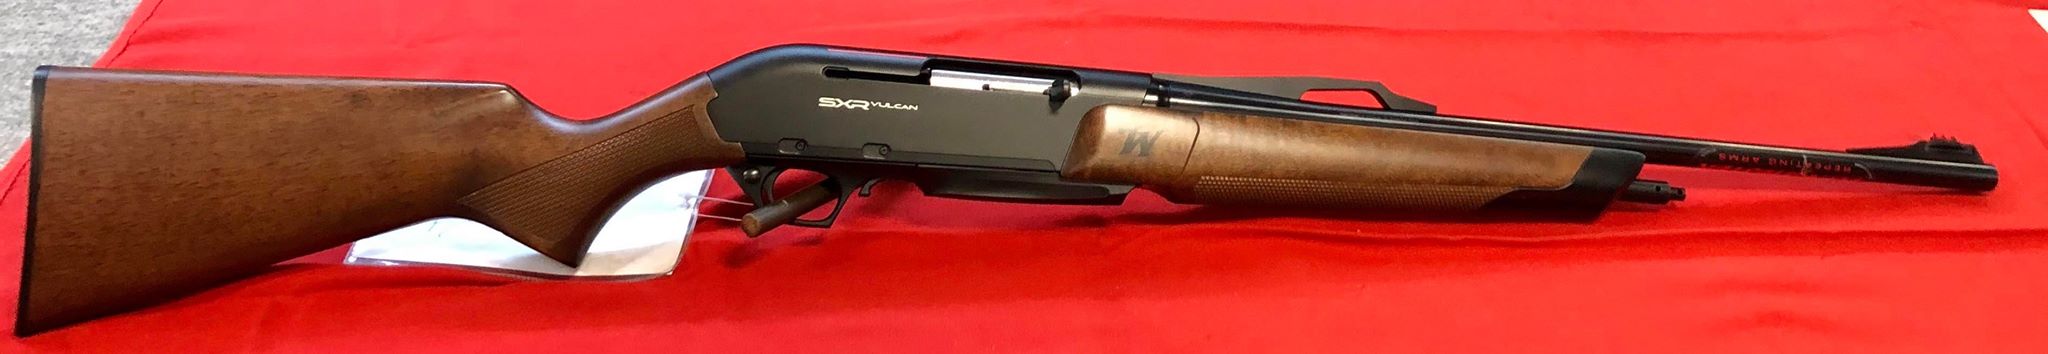 Winchester SXR Vulcan semi-automatique en calibre 300 Win ou 30.06 .
Arme en bois, 3 coups, chargeur fixe.